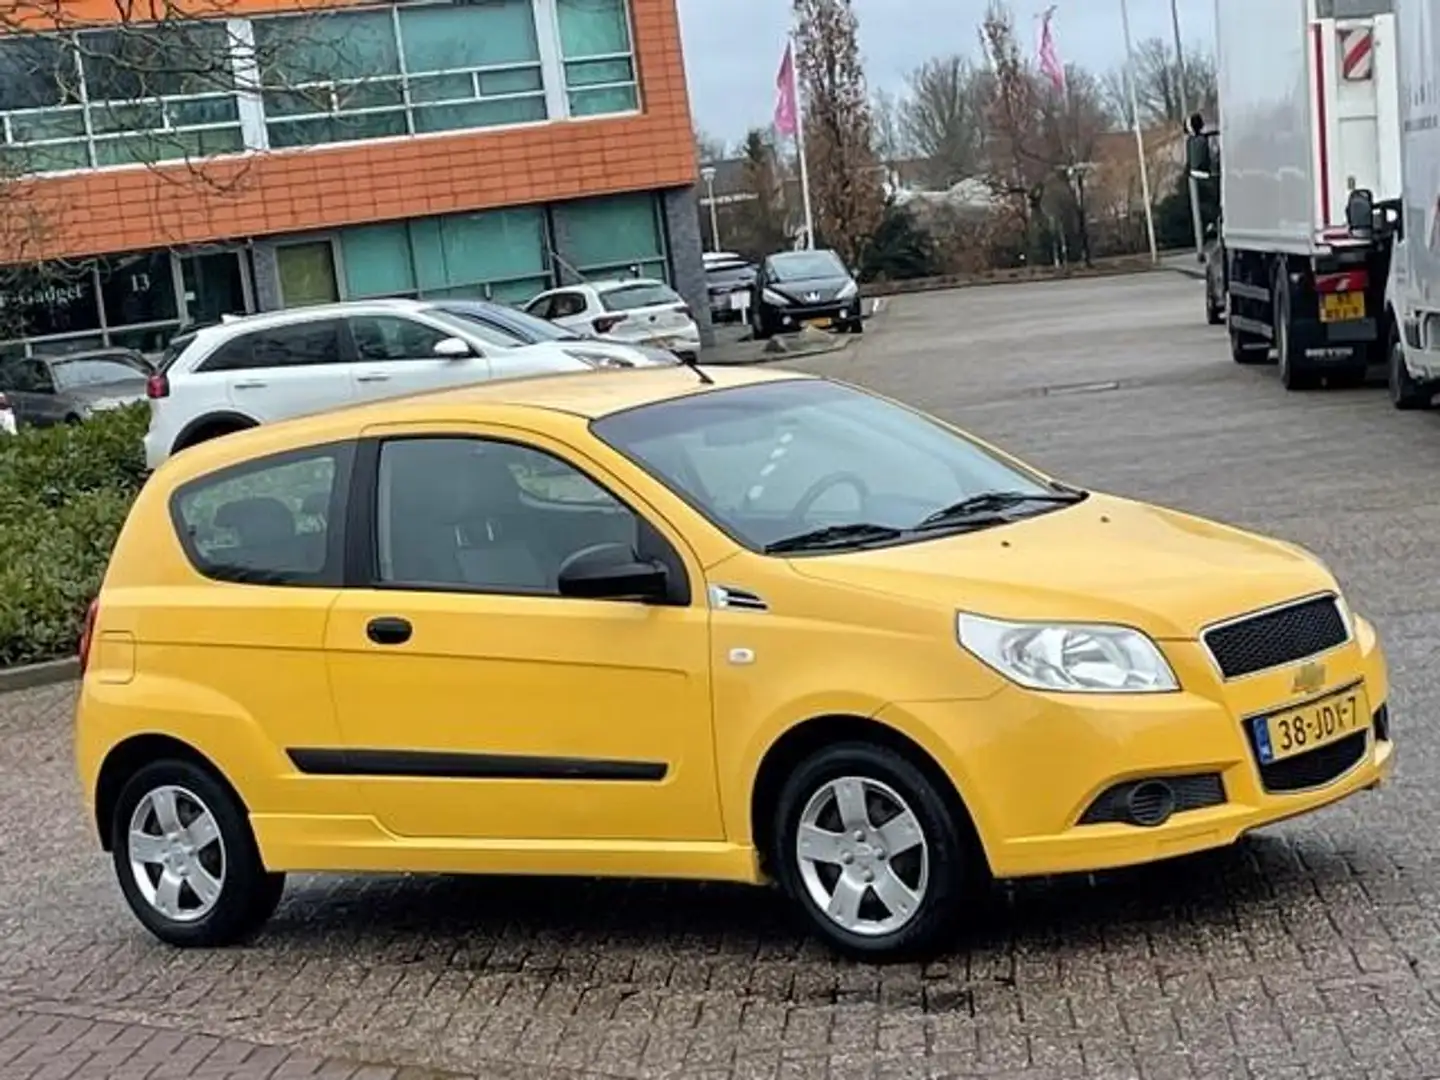 Chevrolet Aveo 1.2 16V L,bj.2009, kleur:geel,APK tot 02/2025 en N Жовтий - 2